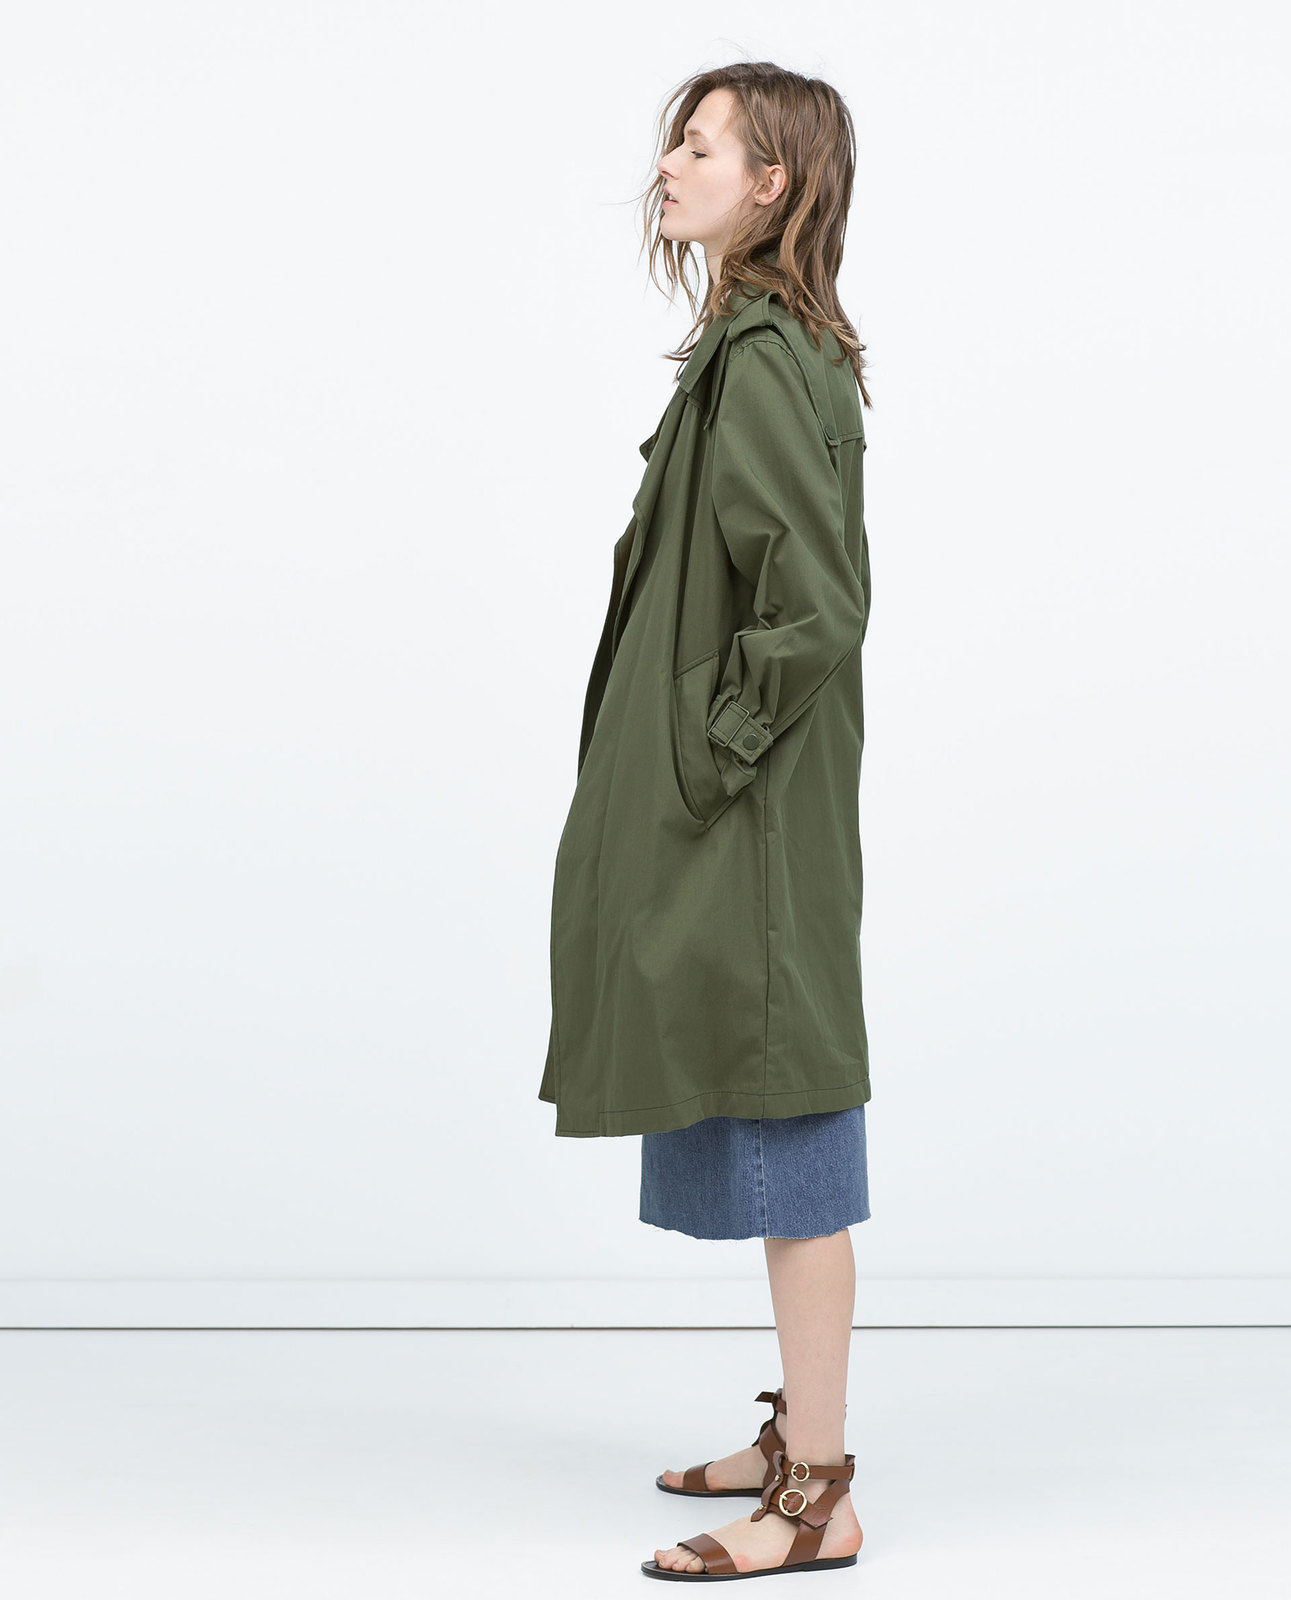 Zara oversize trenchcoat 2015.02.23 fotója